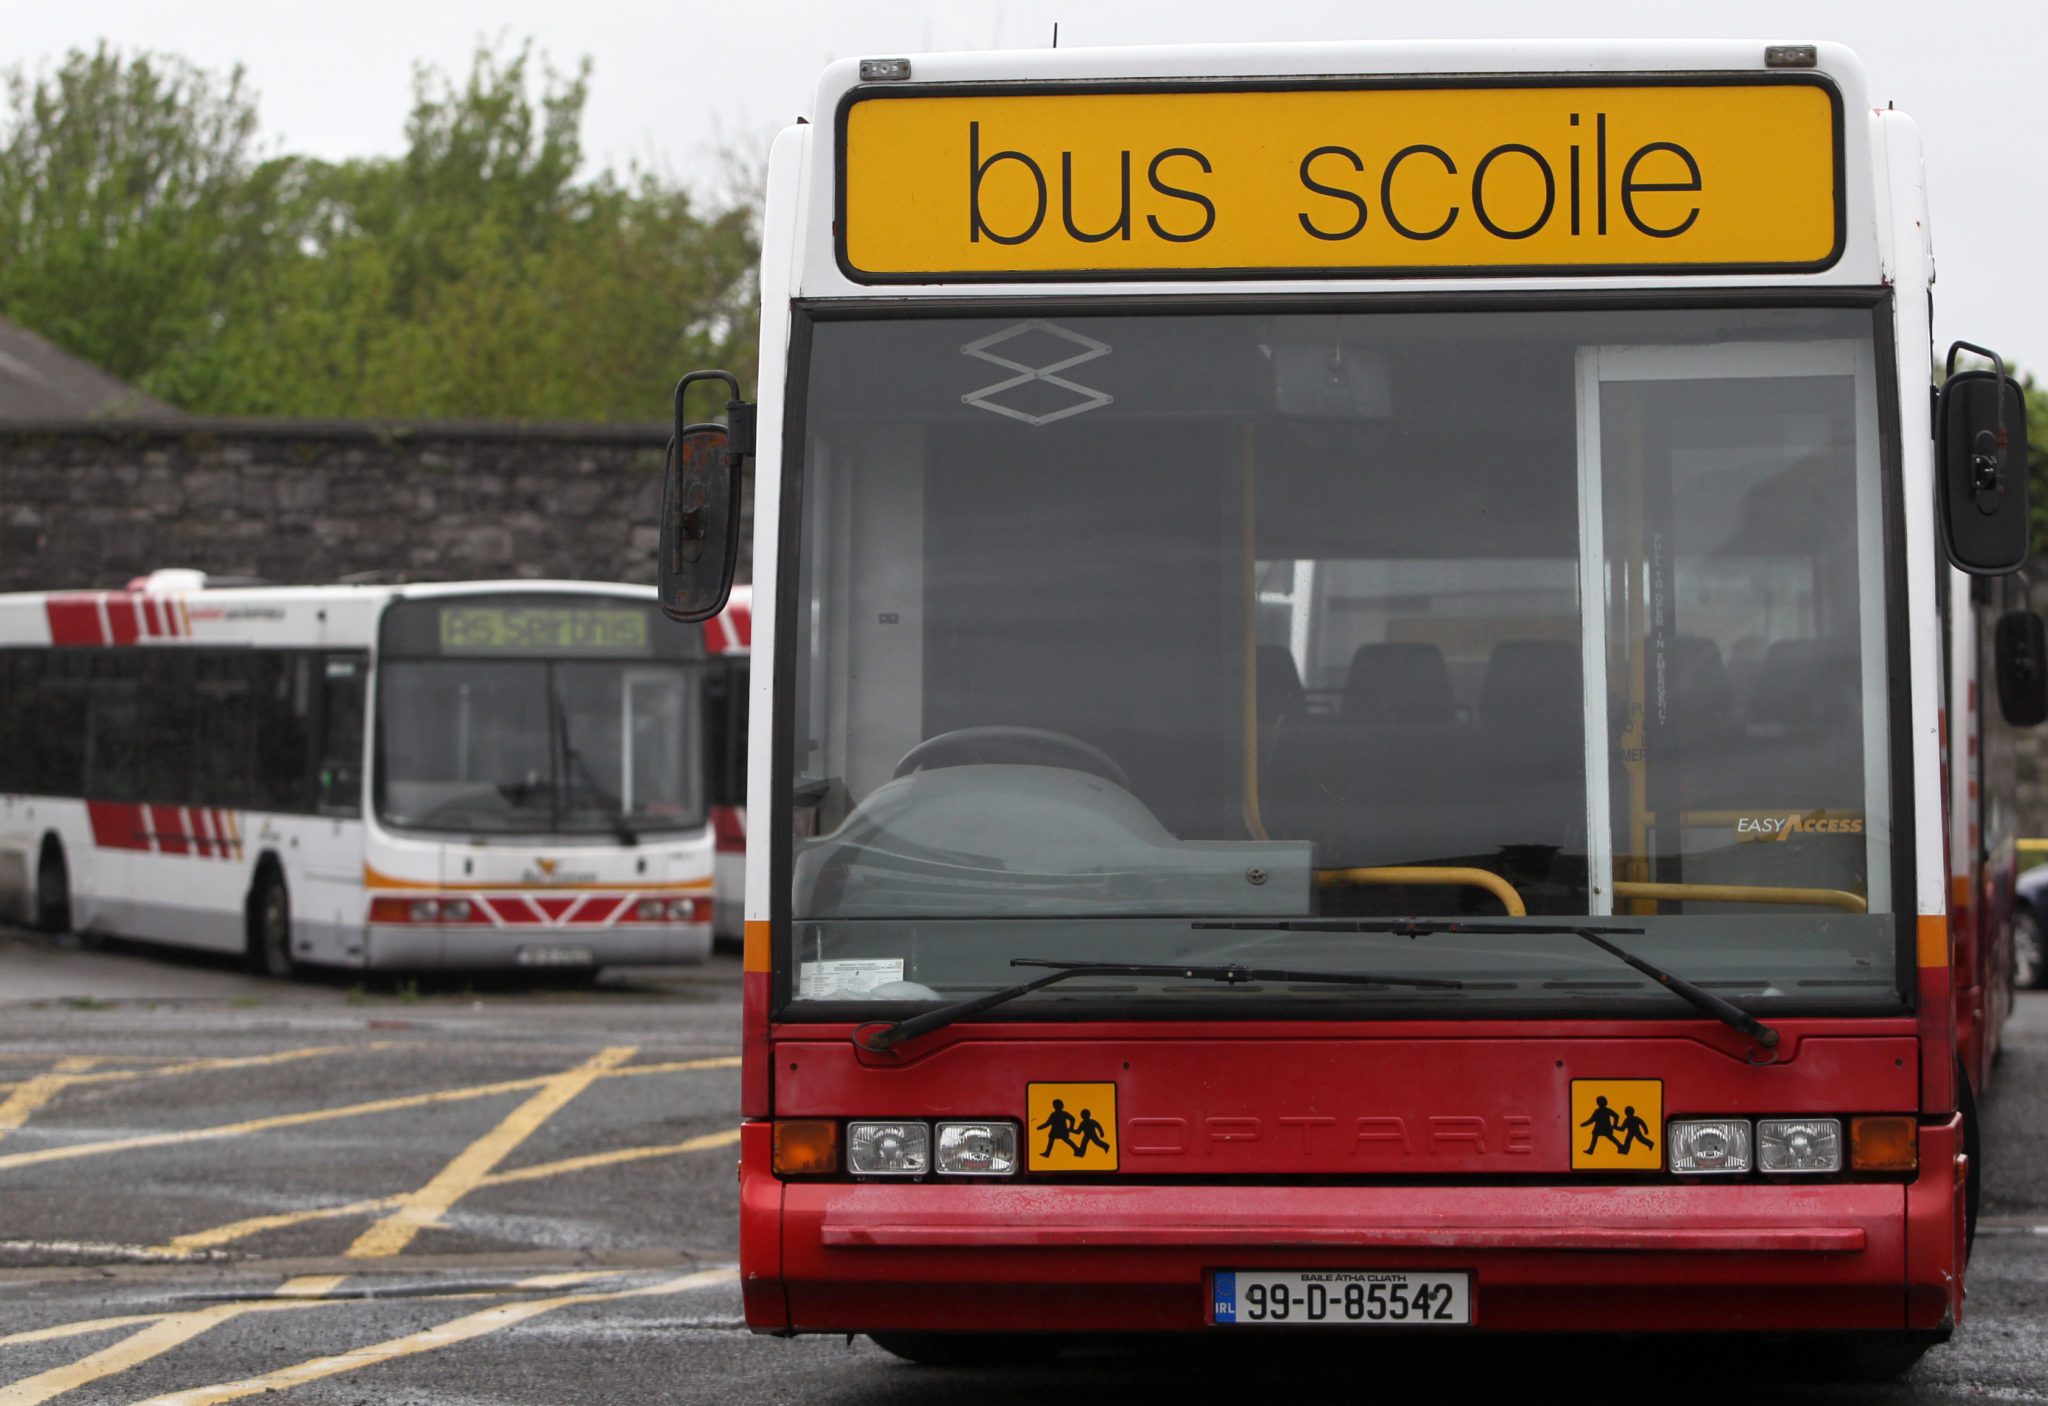 A school bus in 2013